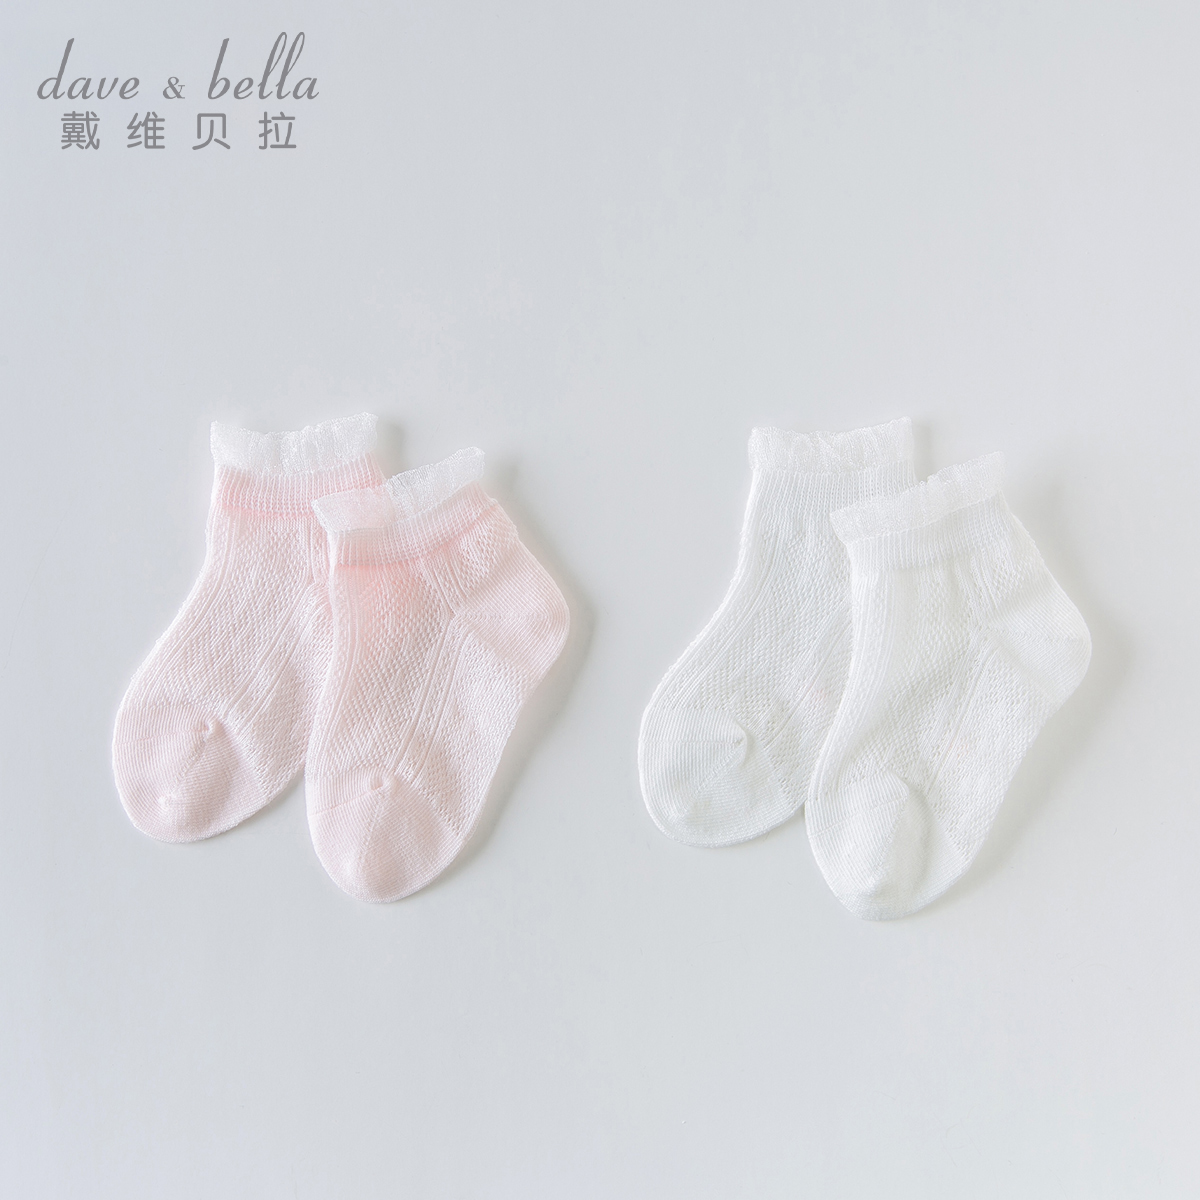 戴维贝拉davebella女童袜子  夏季新款薄款丝袜宝宝弹力短袜